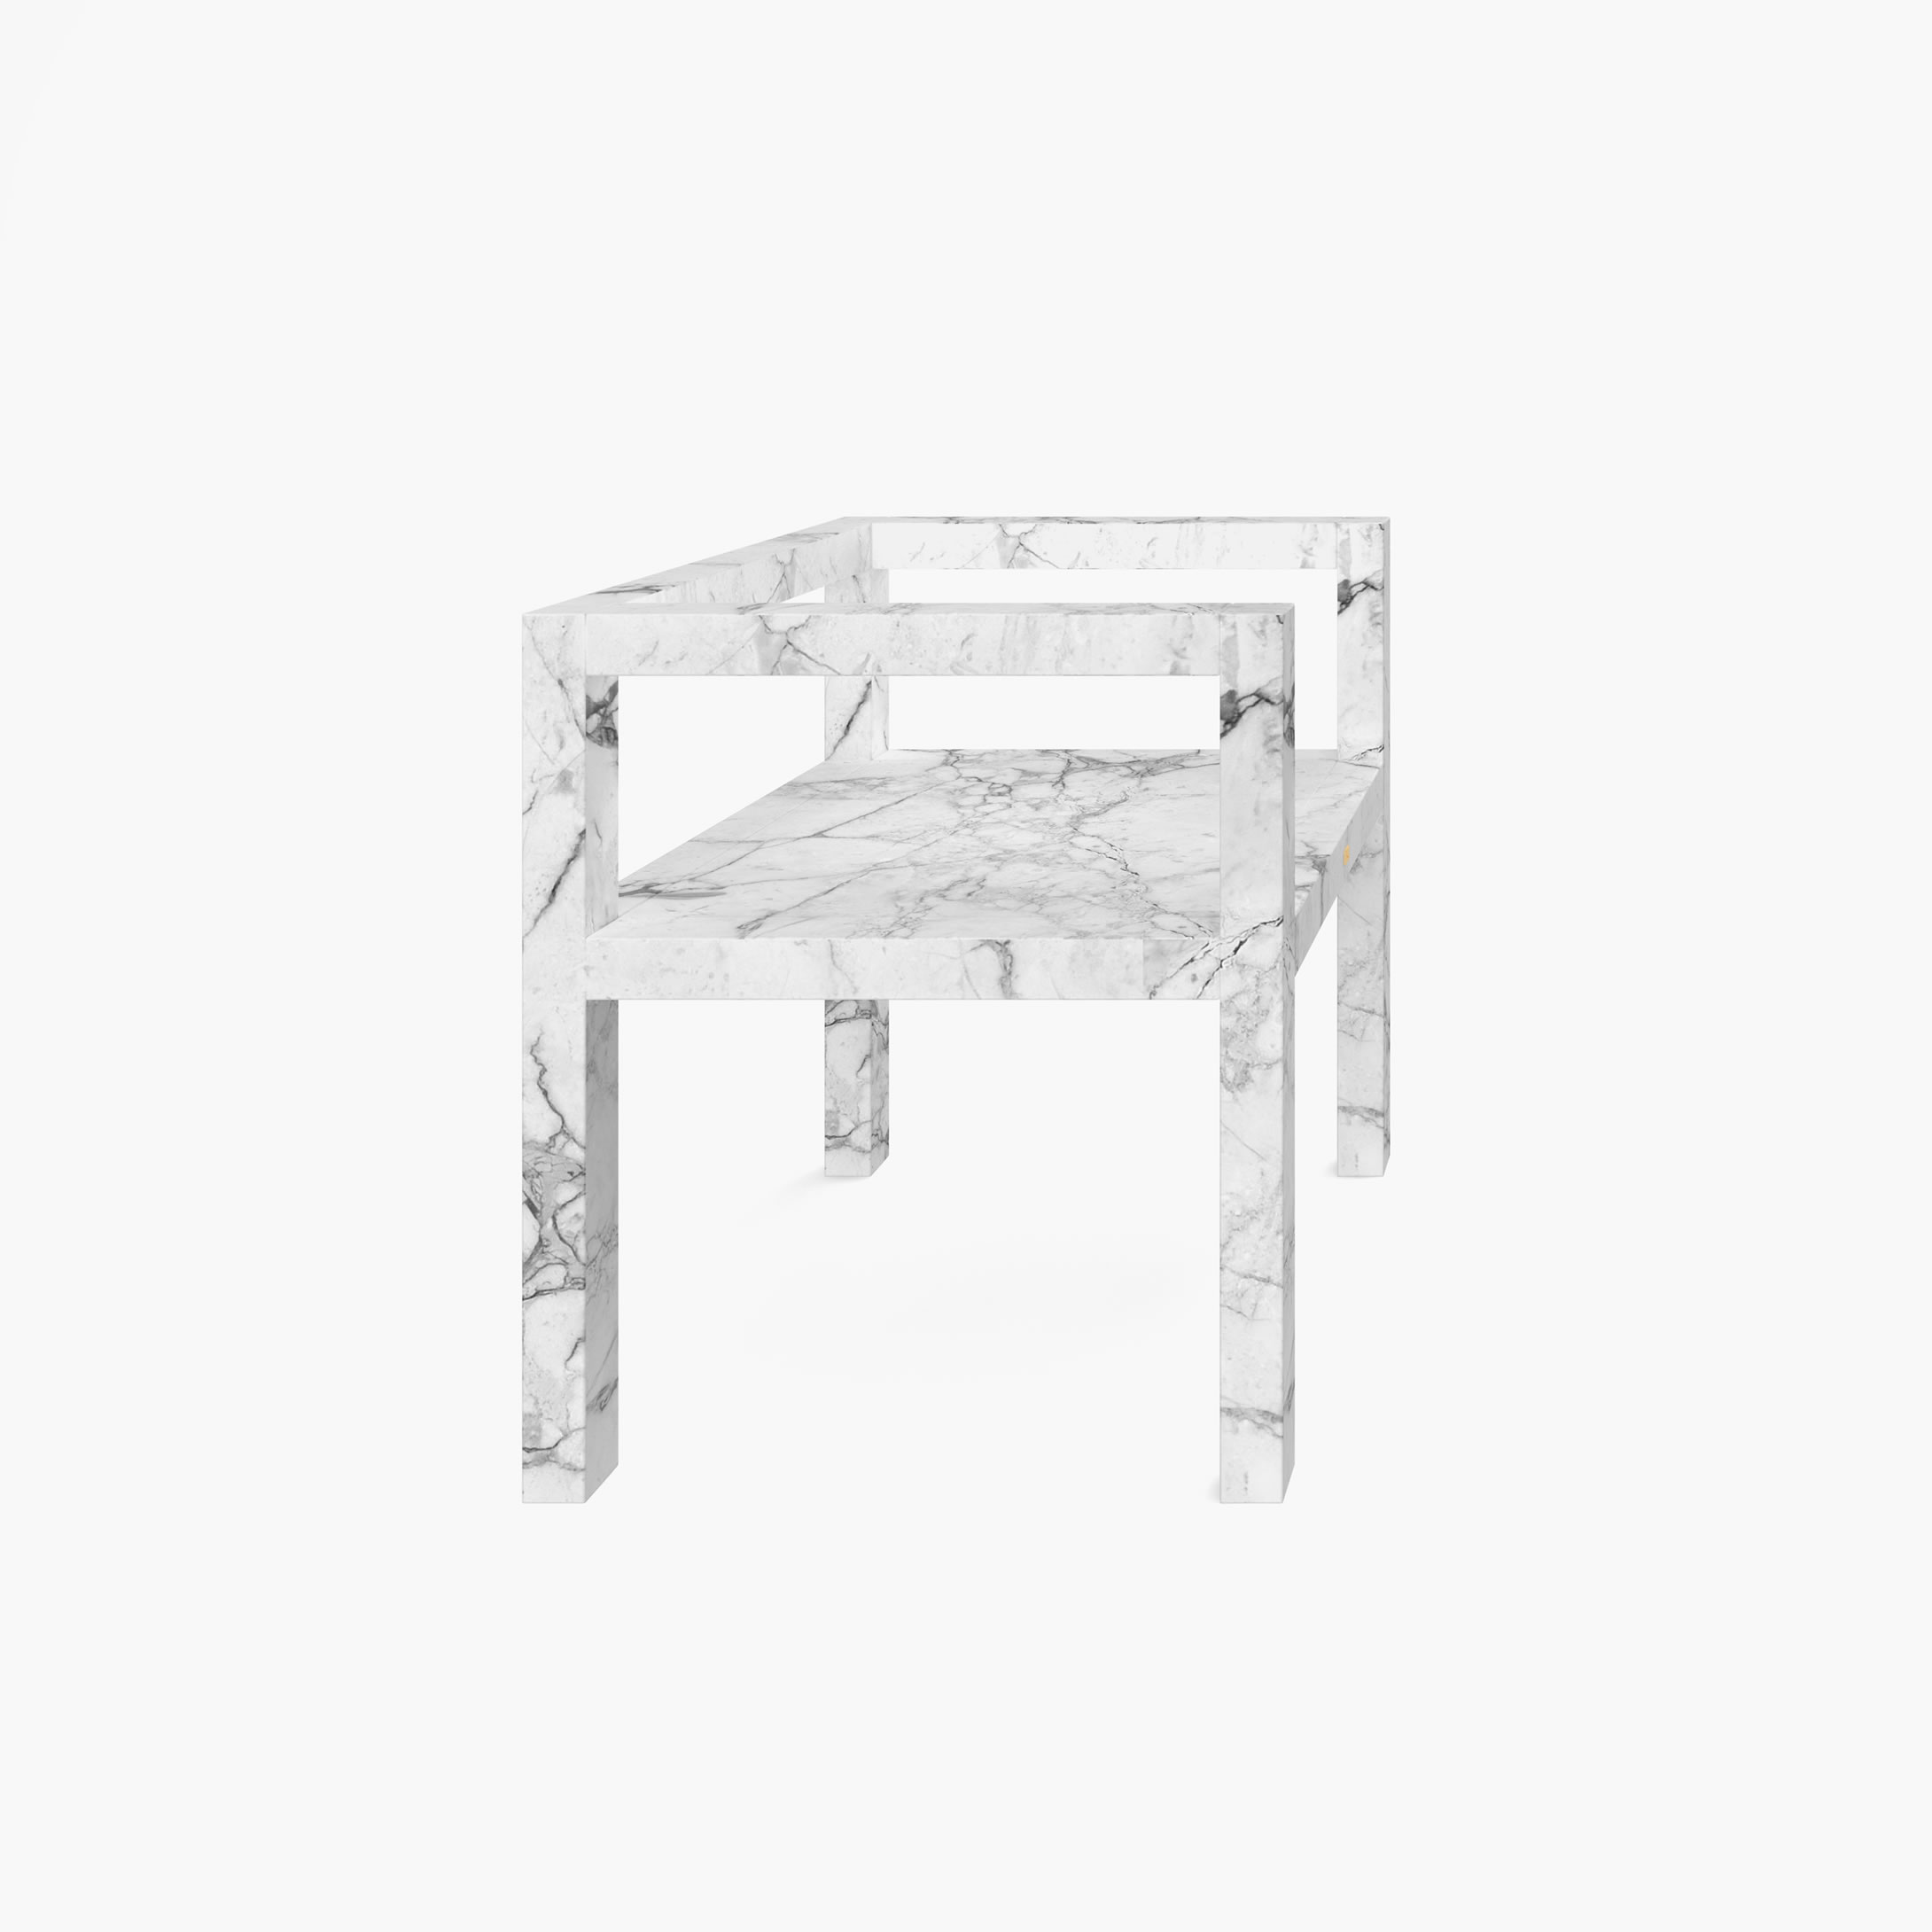 Stuhl mit Armlehnen aus quadratischen Riegeln Weiss Arabescato Marmor handgemacht Esszimmer Kreation Stuehle FS 424 FELIX SCHWAKE